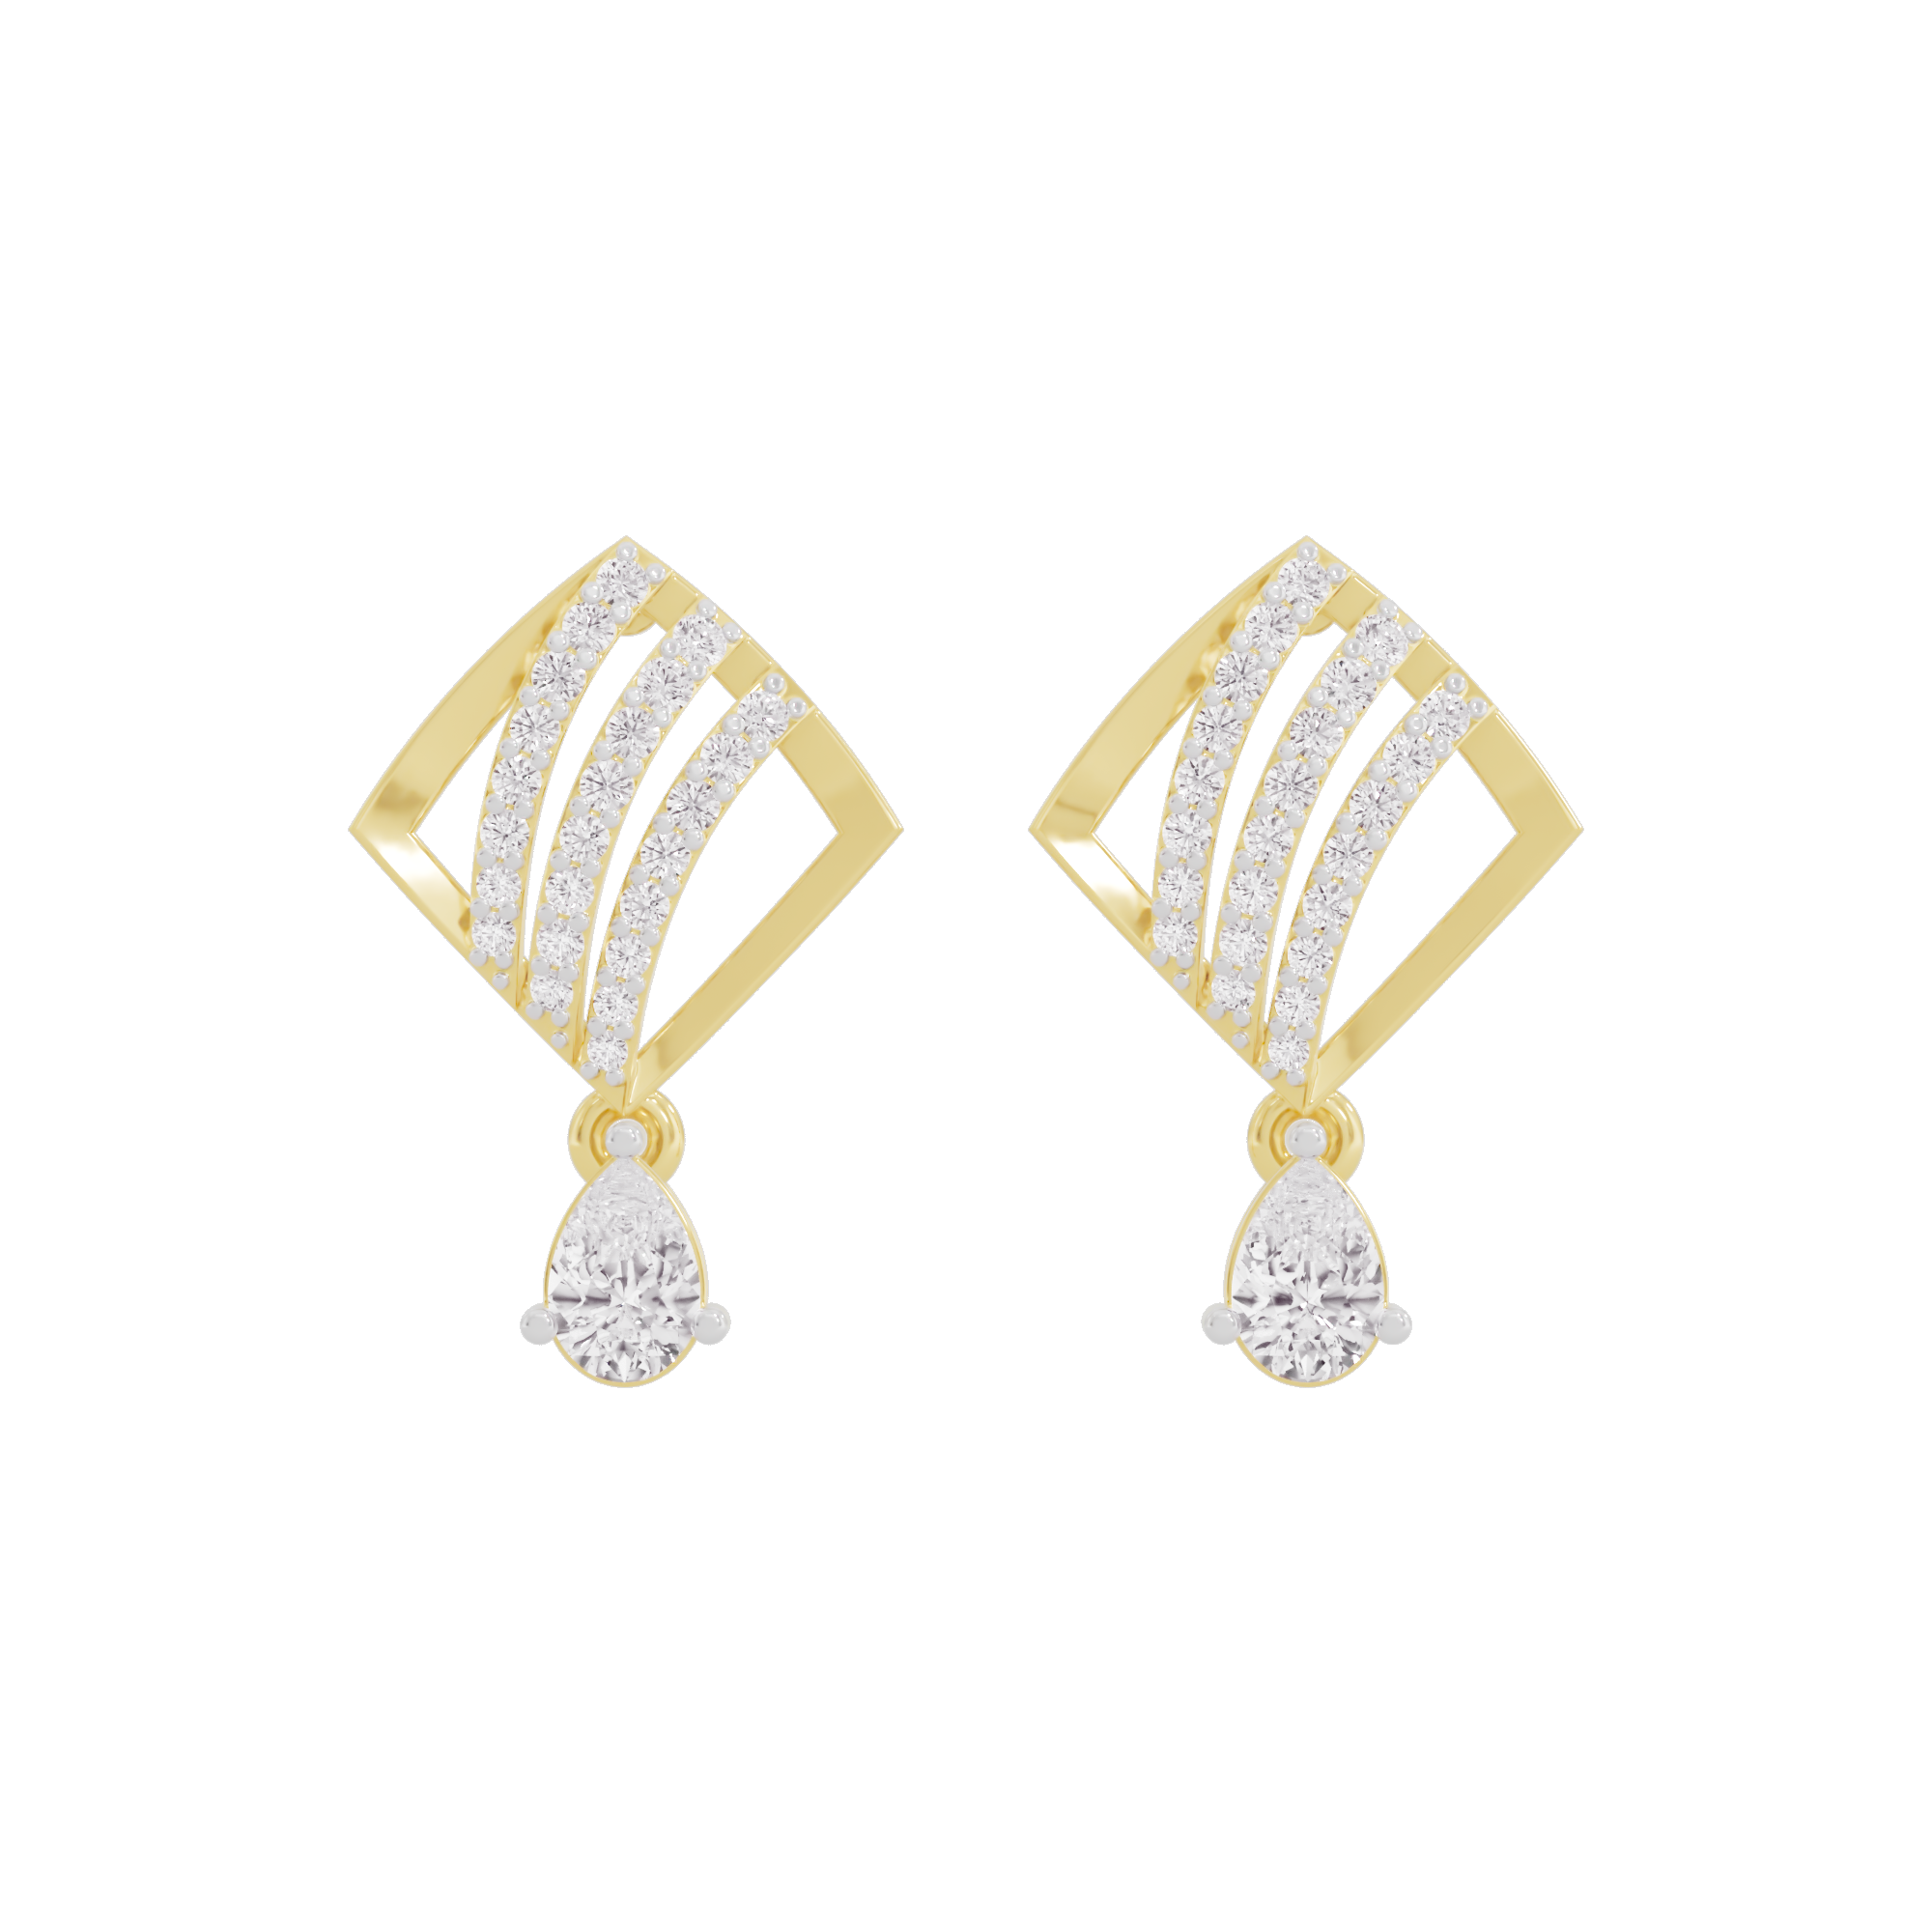 Adorable Diamond Earrings